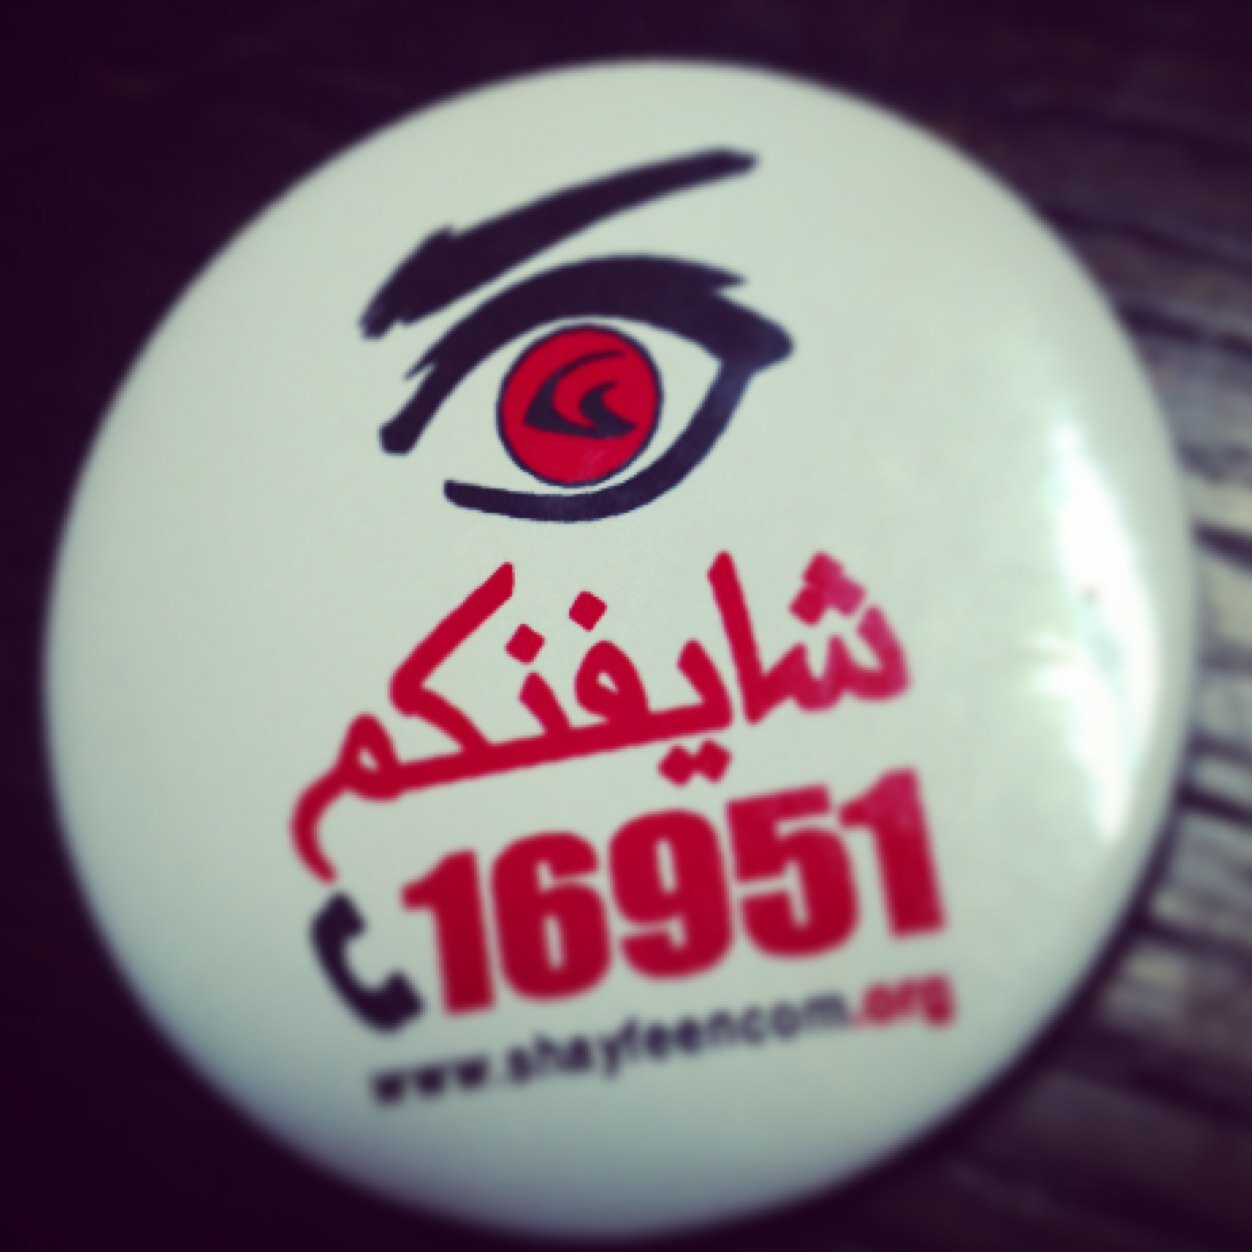 الجمعية المصرية للرقابة الشعبية وحقوق الإنسان - Egyptian Association for Public Observation and Human Rights (Hotline 16543) http://t.co/9W7nw2VRH5